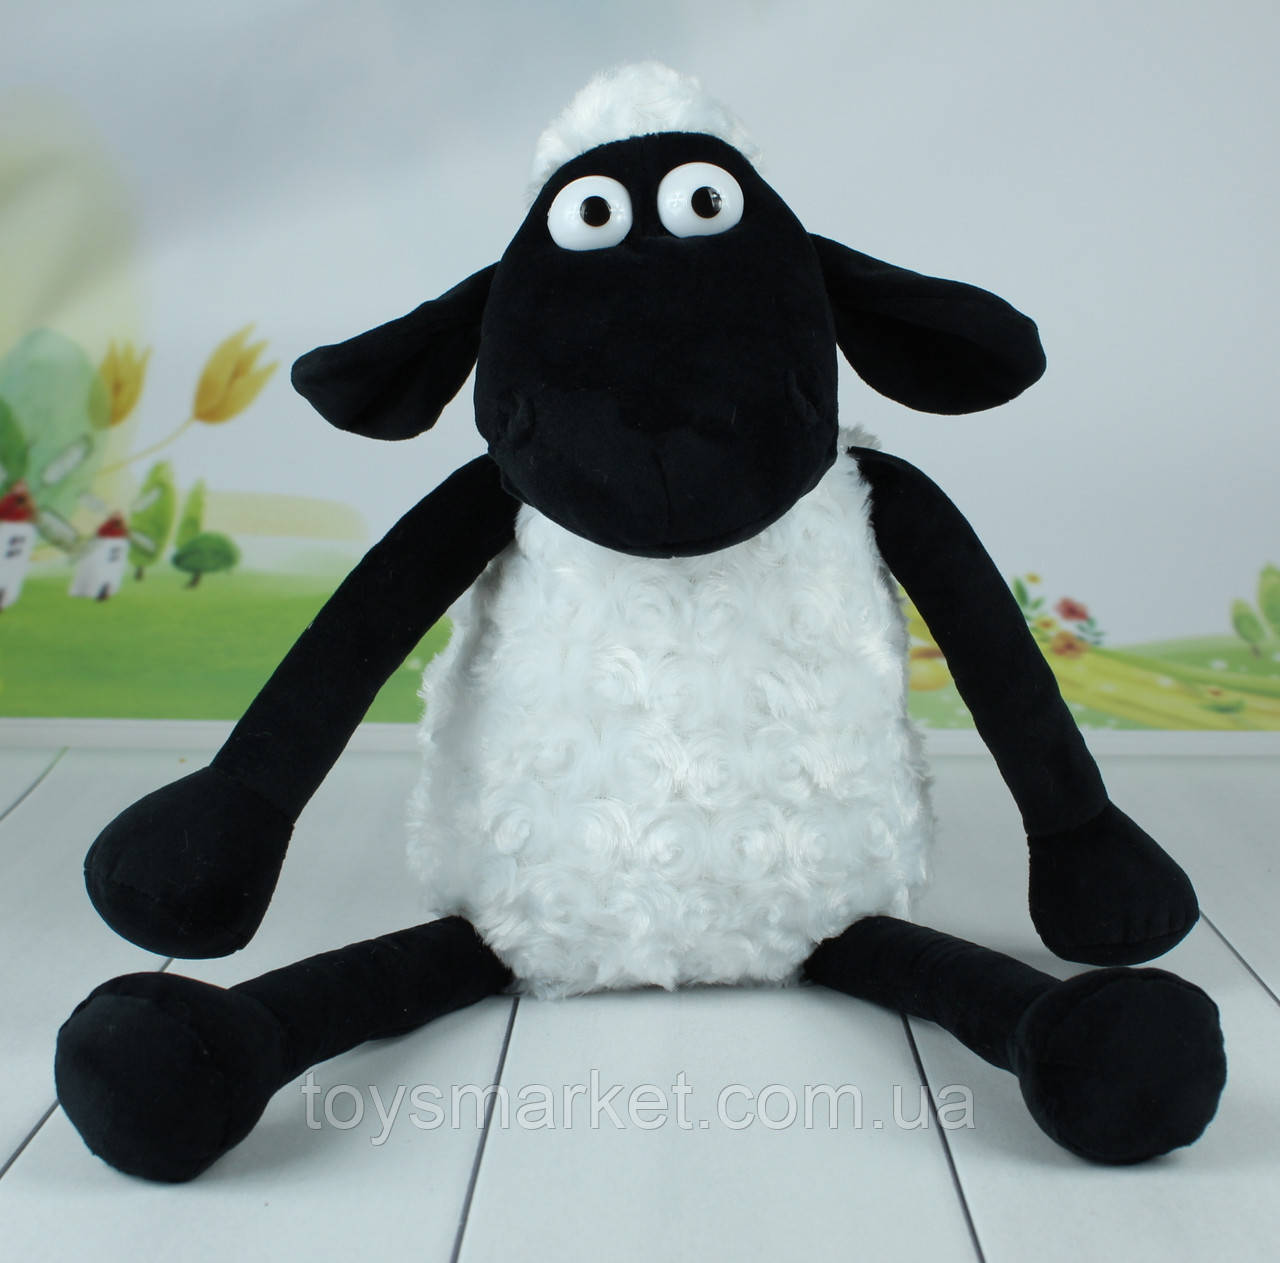 М'яка іграшка баранчик Шон, "Shaun the Sheep", 44 см